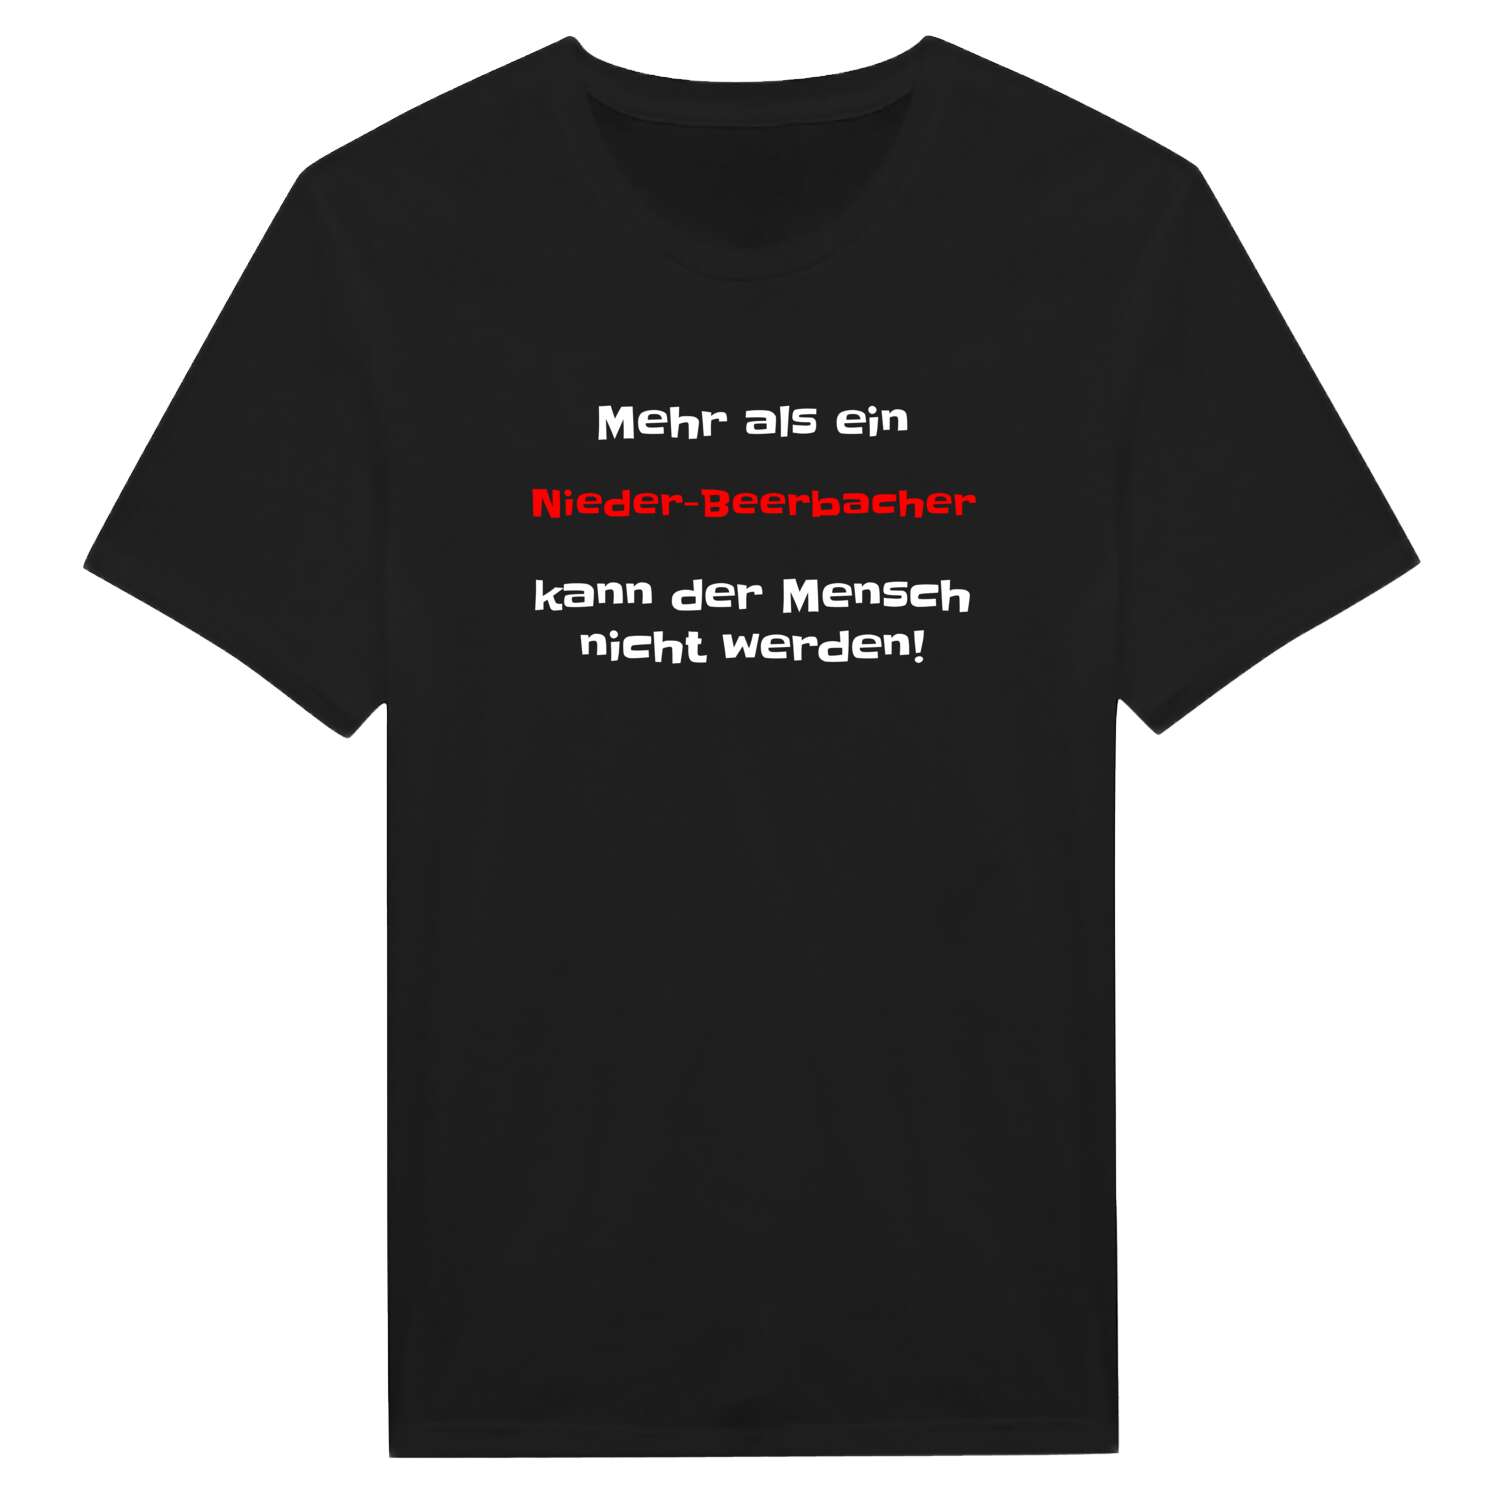 Nieder-Beerbach T-Shirt »Mehr als ein«